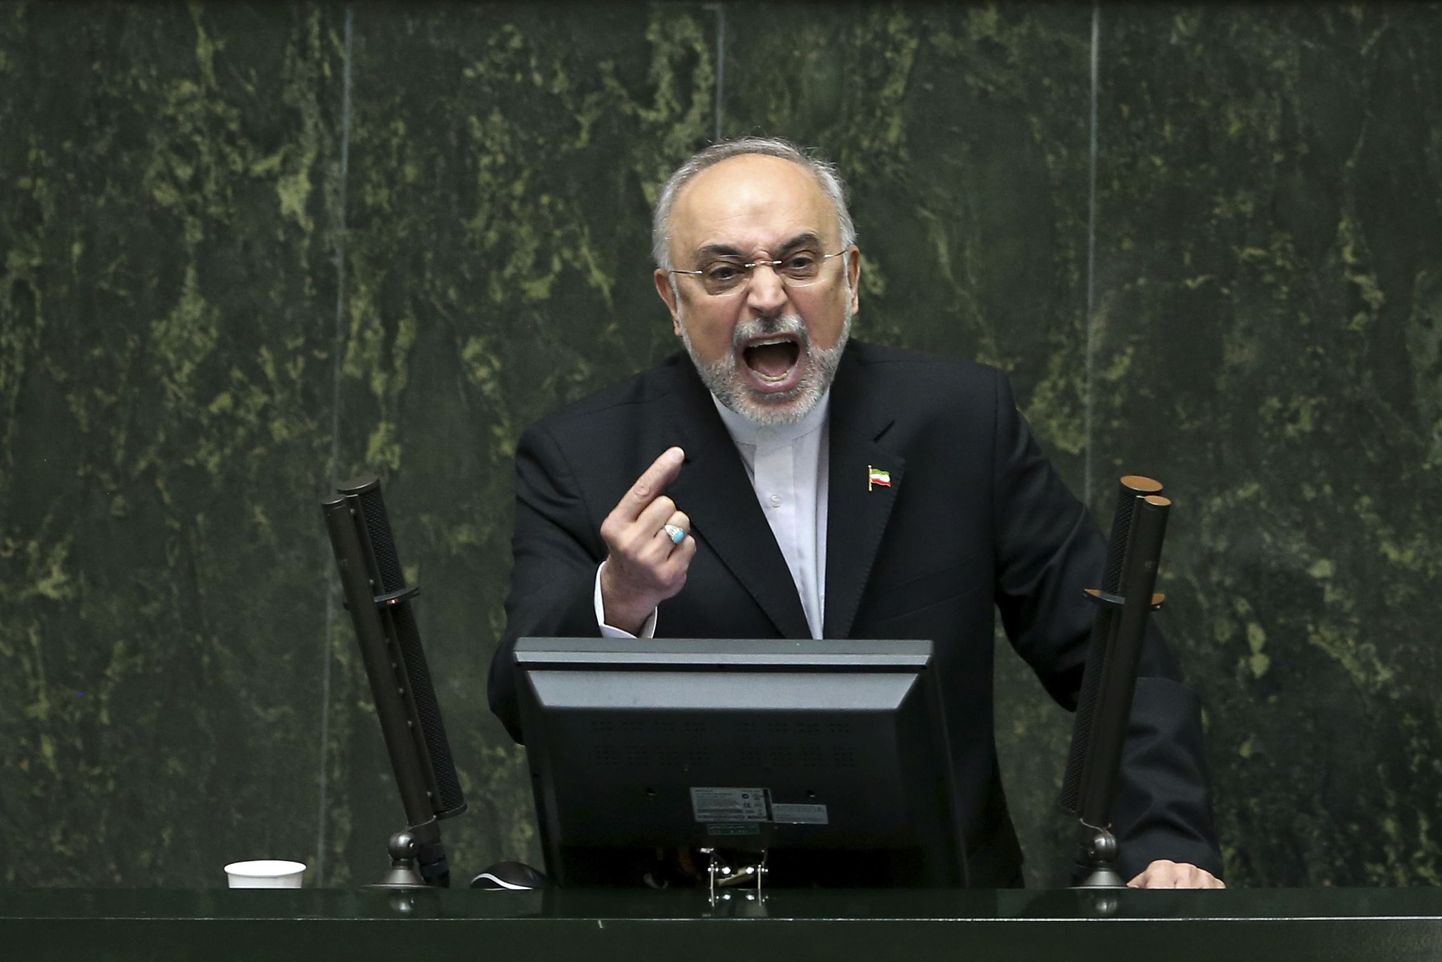 Iraani Aatomienergiaorganisatsiooni juht Ali Akbar Salehi pidas nädal tagasi Iraani parlamendis väga emotsionaalse kõne tuumaprogrammi piiramise osas.